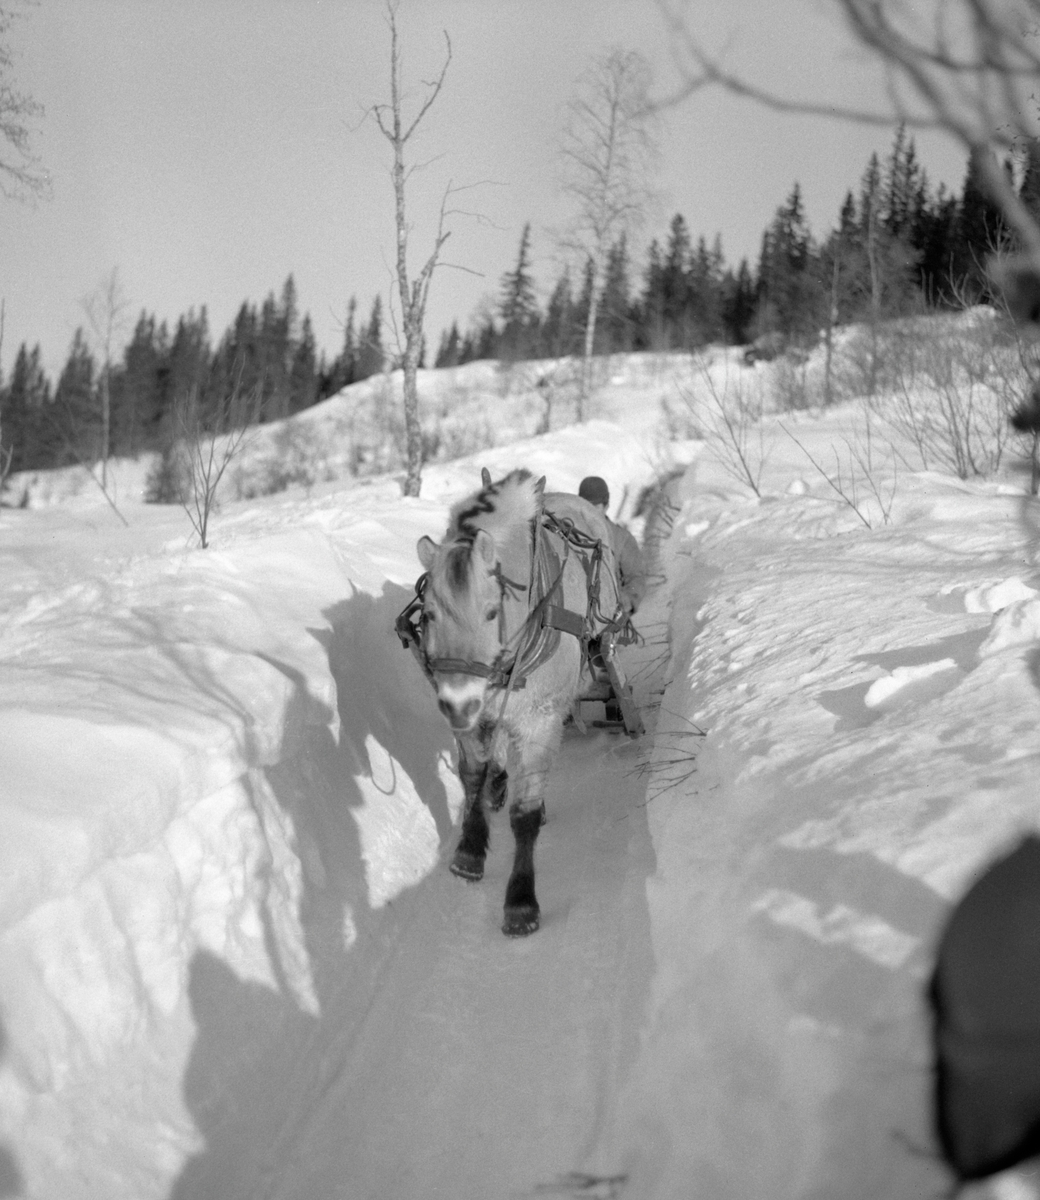 Hankekjøring av tømmer i Vestre Gausdal i mars 1967. Fotografiet er tatt et stykke oppe i lia der hesten, en fjording, trakk de sammenkjedete tømmerstokkene på en smal veg som tømmerkjørerne hadde måkt og tråkket i djupsnøen med sikte på å få tømmeret trygt nedover den bratte lia. Ei normalvending under hankekjøring i det bratte terrenget i Vestre Gausdal var på om lag tre tylfter (36 stokker), men under gode forhold skal det ha vært kjørt vendinger på oppimot 100 stokker. Hvor mye tømmer som fantes i den vendinga som er avbildet her vet vi ikke eksakt. I dette tilfellet vet vi imidlertid at det var tre kilometers kjøreveg. Når strekningen var såpass lang rakk tømmerkjørerne bare to vendinger om dagen i den mørkeste tida (desember-januar). Dette fotografiet ble tatt i mars 1967, da Kjell Søgård og Tore Fossum fra Norsk Skogbruksmuseum var i Vestre Gausdal for å gjøre opptak til en kulturhistorisk dokumentasjonsfilm om tømmerkjøringstradisjonene i bygda. I kommentarene til filmen sier gausdølen Nils Bjørge følgende: «Under hankekjøring lyt det væra godt samspell mellom hæst og kar, ska’ vendinga gå godt. Enkelte øykje lære konsta bæ’re ell andre. Døm tek hardt ti før å få løyst vendinga i starta, og så legg døm seg kraftig ti sæla’n der det er flate og tunge strekninger.»